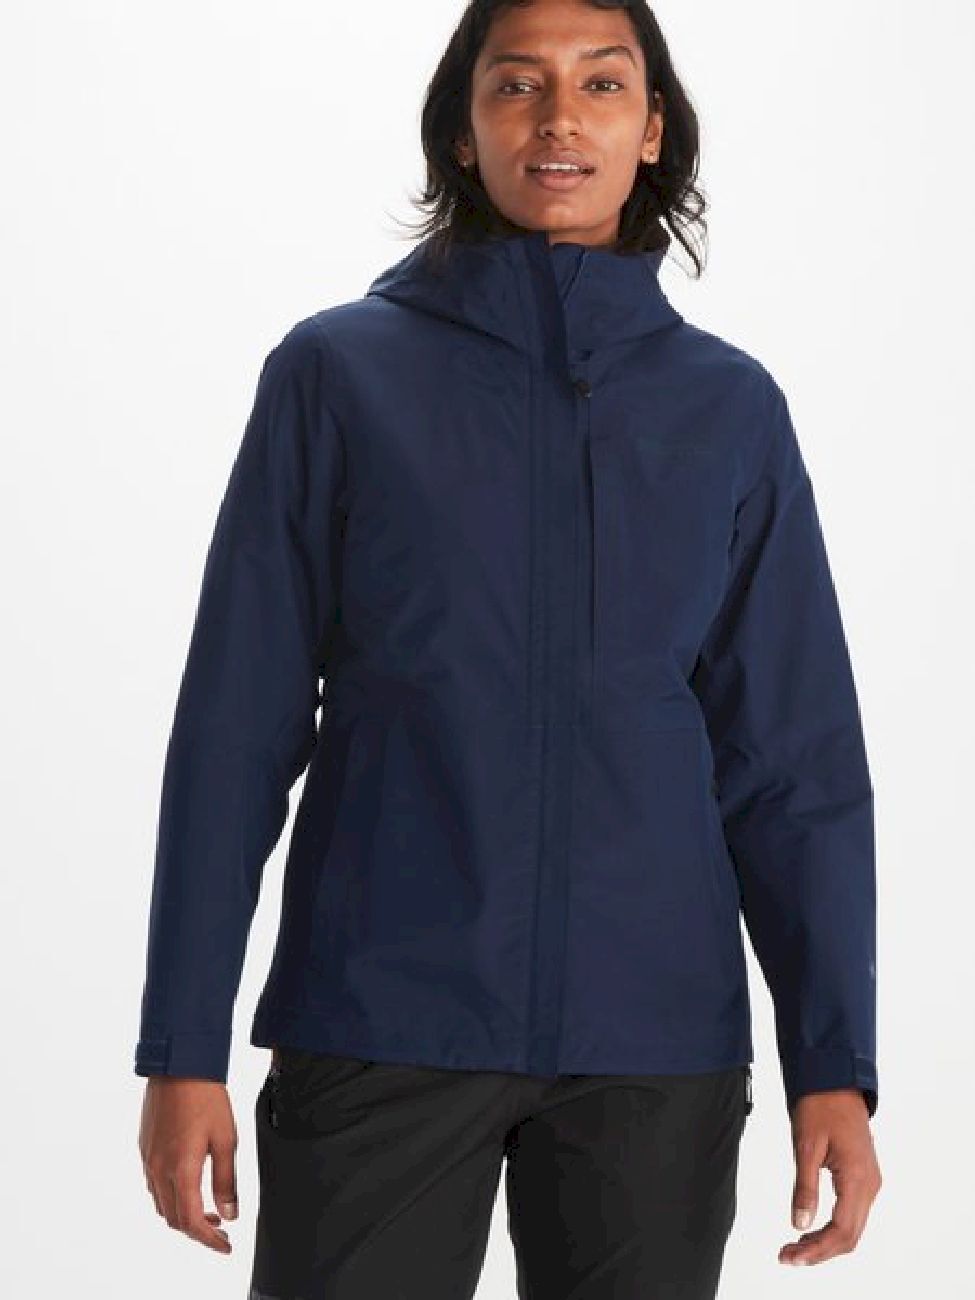 Marmot Minimalist Jacket - Waterproof jacket - Women's